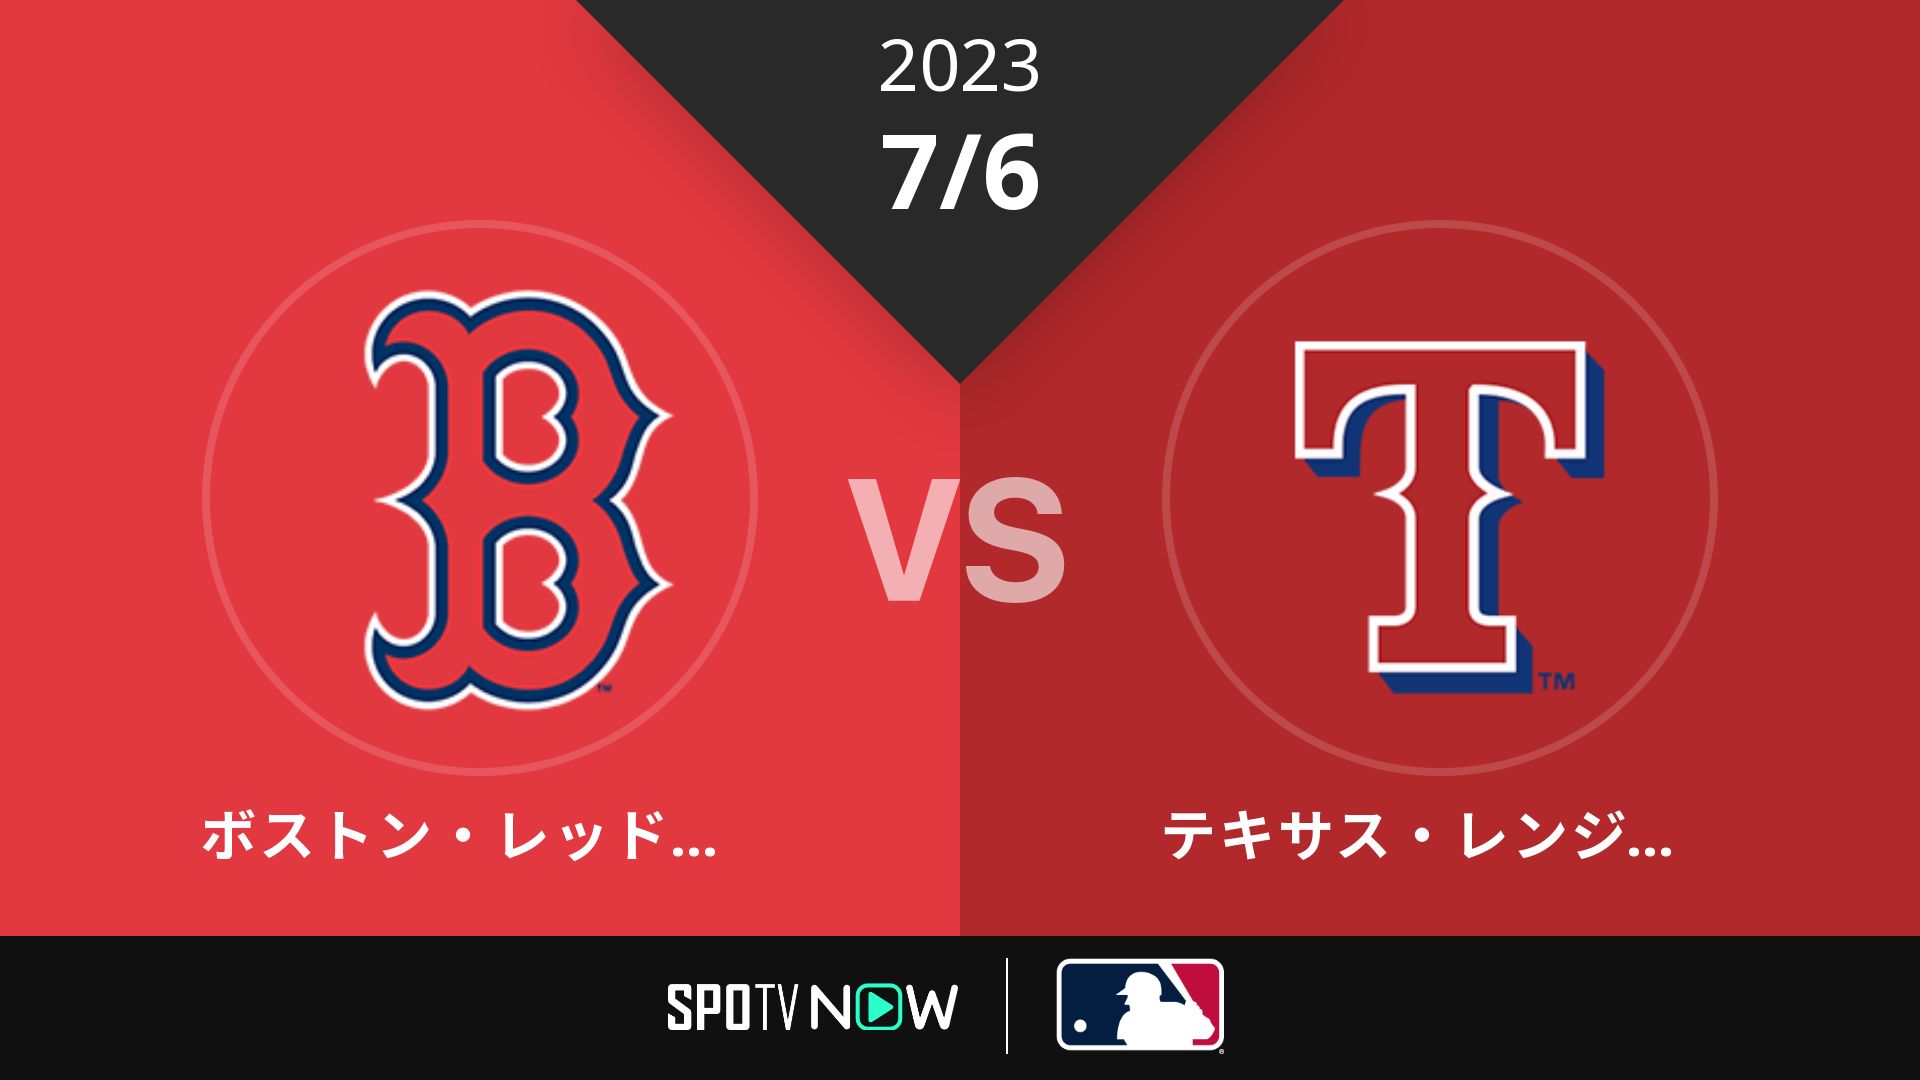 2023/7/6 Rソックス vs レンジャーズ [MLB]